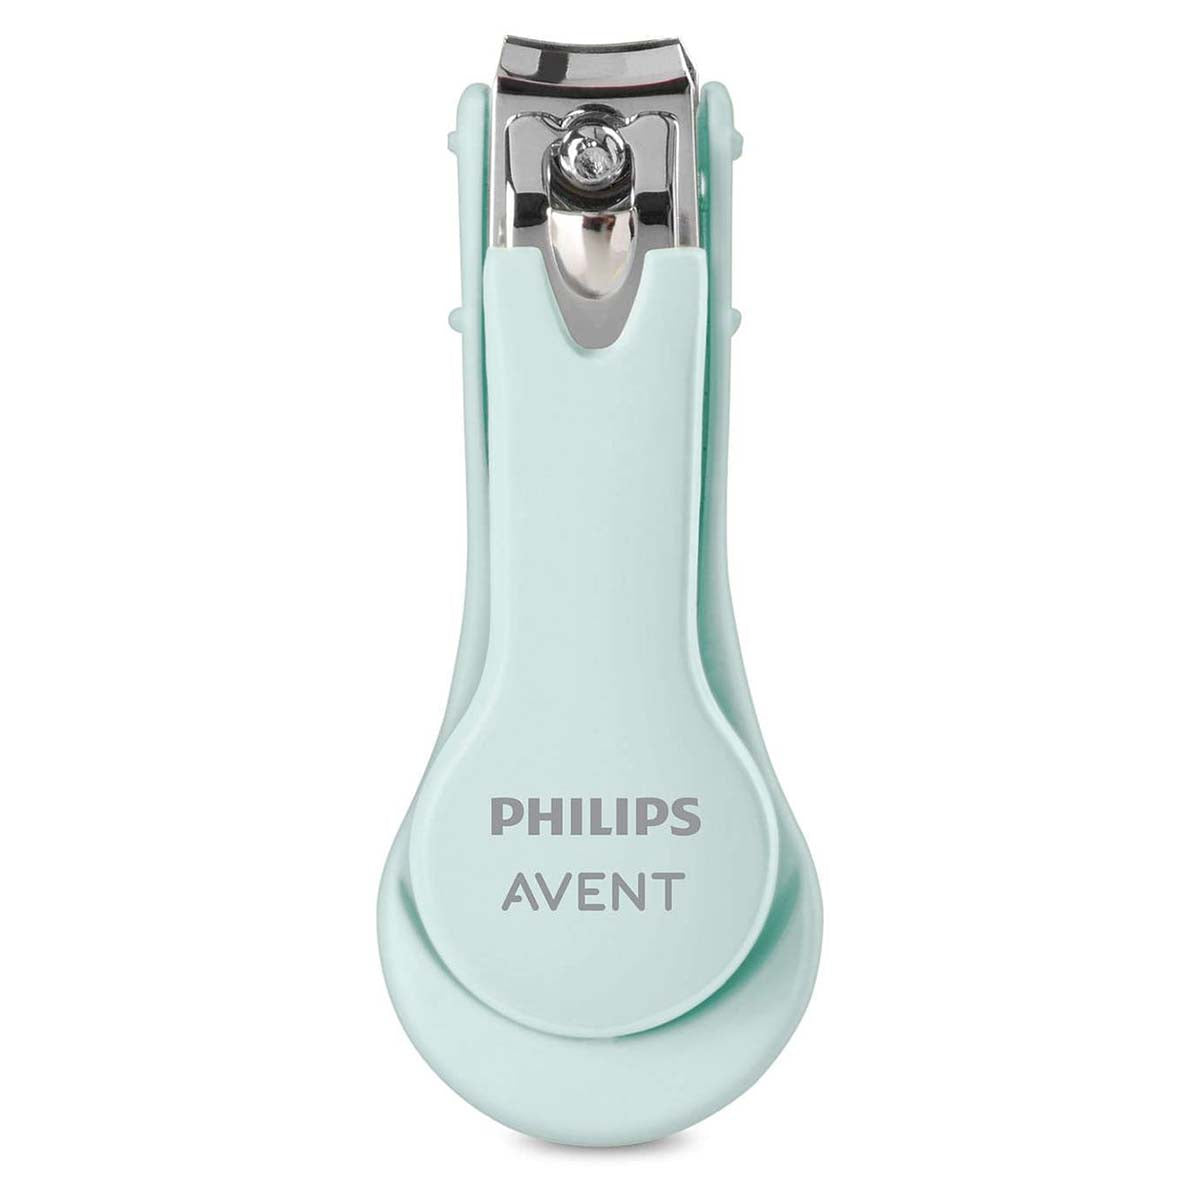 De Philips Avent baby verzorgingsset bevat een neuszuigertje, een nagelschaartje, nagelknippertje, vijltjes en zachte borstel en kammetje in een etuitje. De silicone vingertandenborstel maakt de set compleet. VanZus.